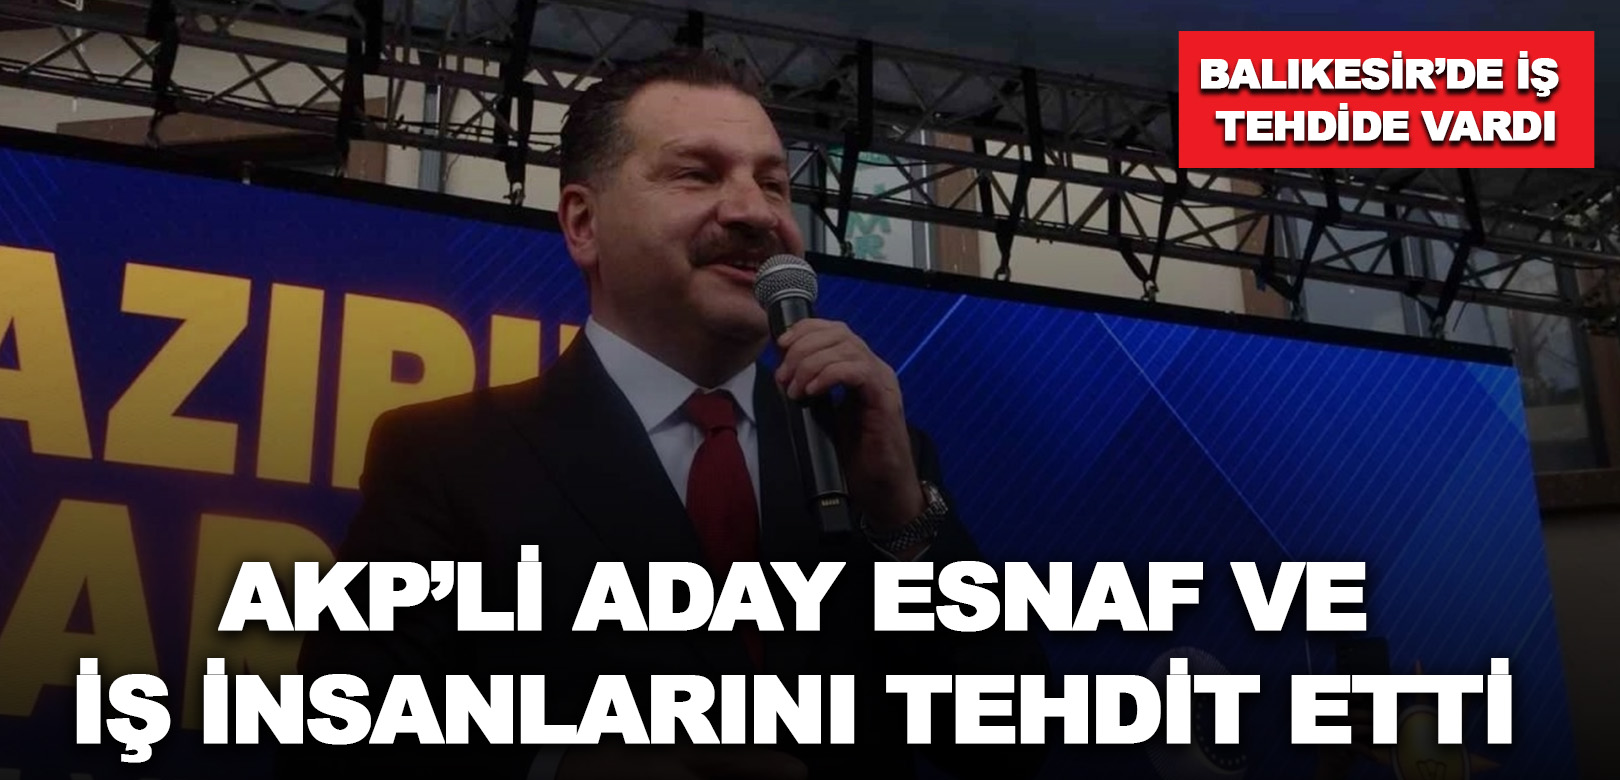 Balıkesir’de iş tehdide vardı: AKP’li aday esnaf ve iş insanlarını tehdit etti